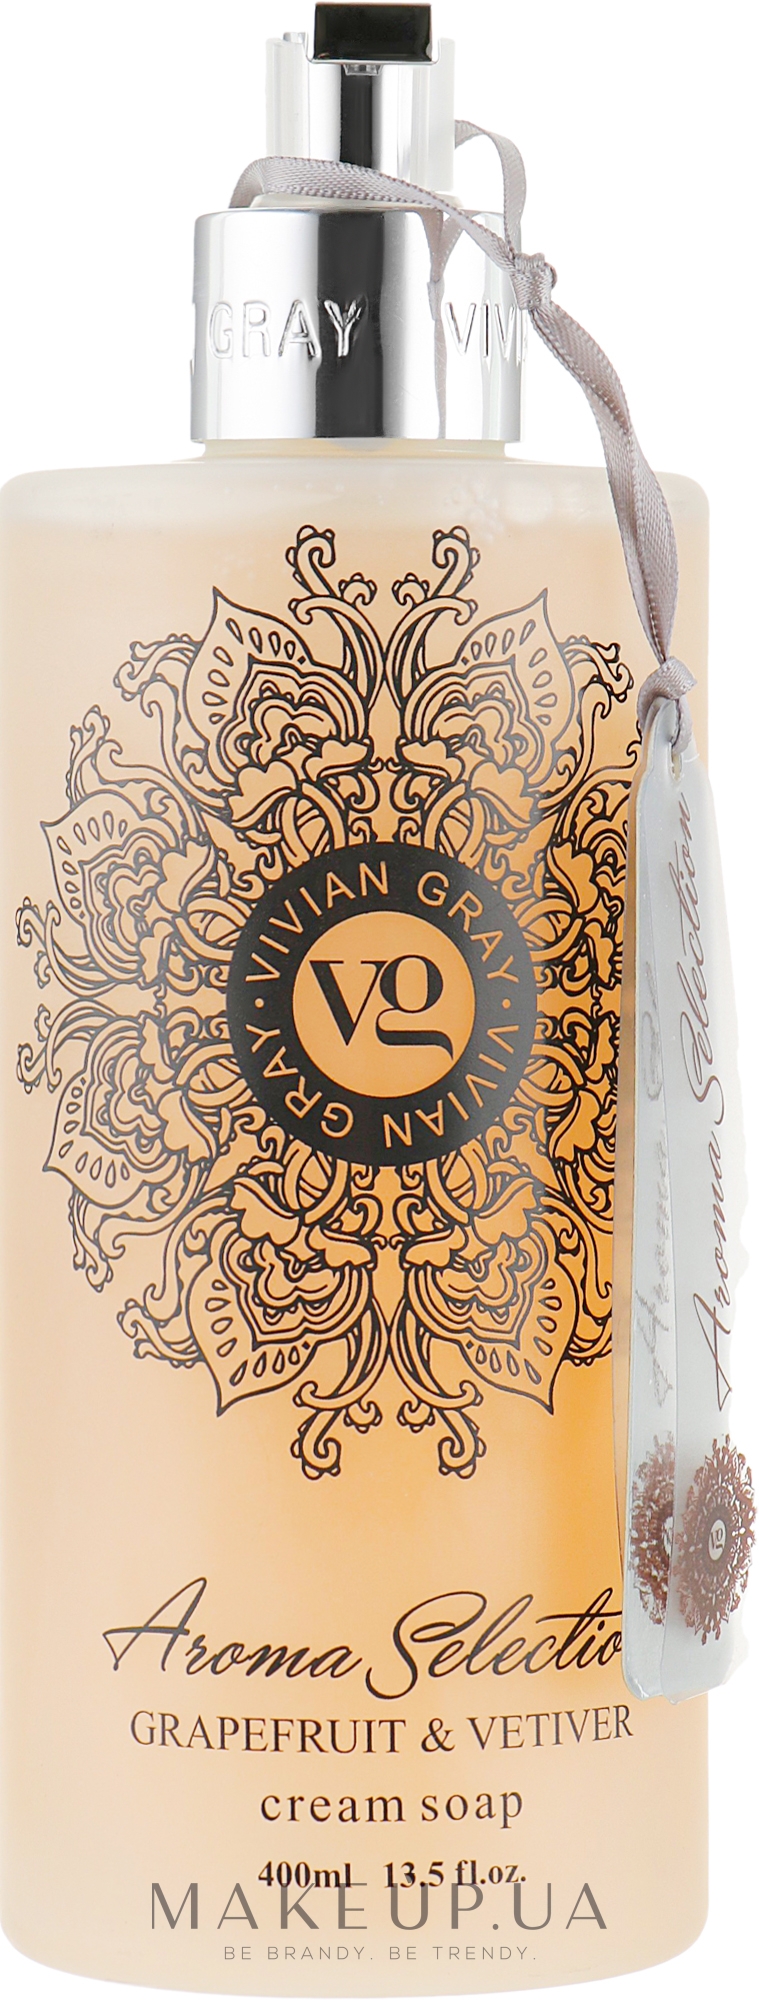 Рідке крем-мило - Vivian Gray Aroma Selection Grapefruit & Vetiver Cream Soap — фото 400ml